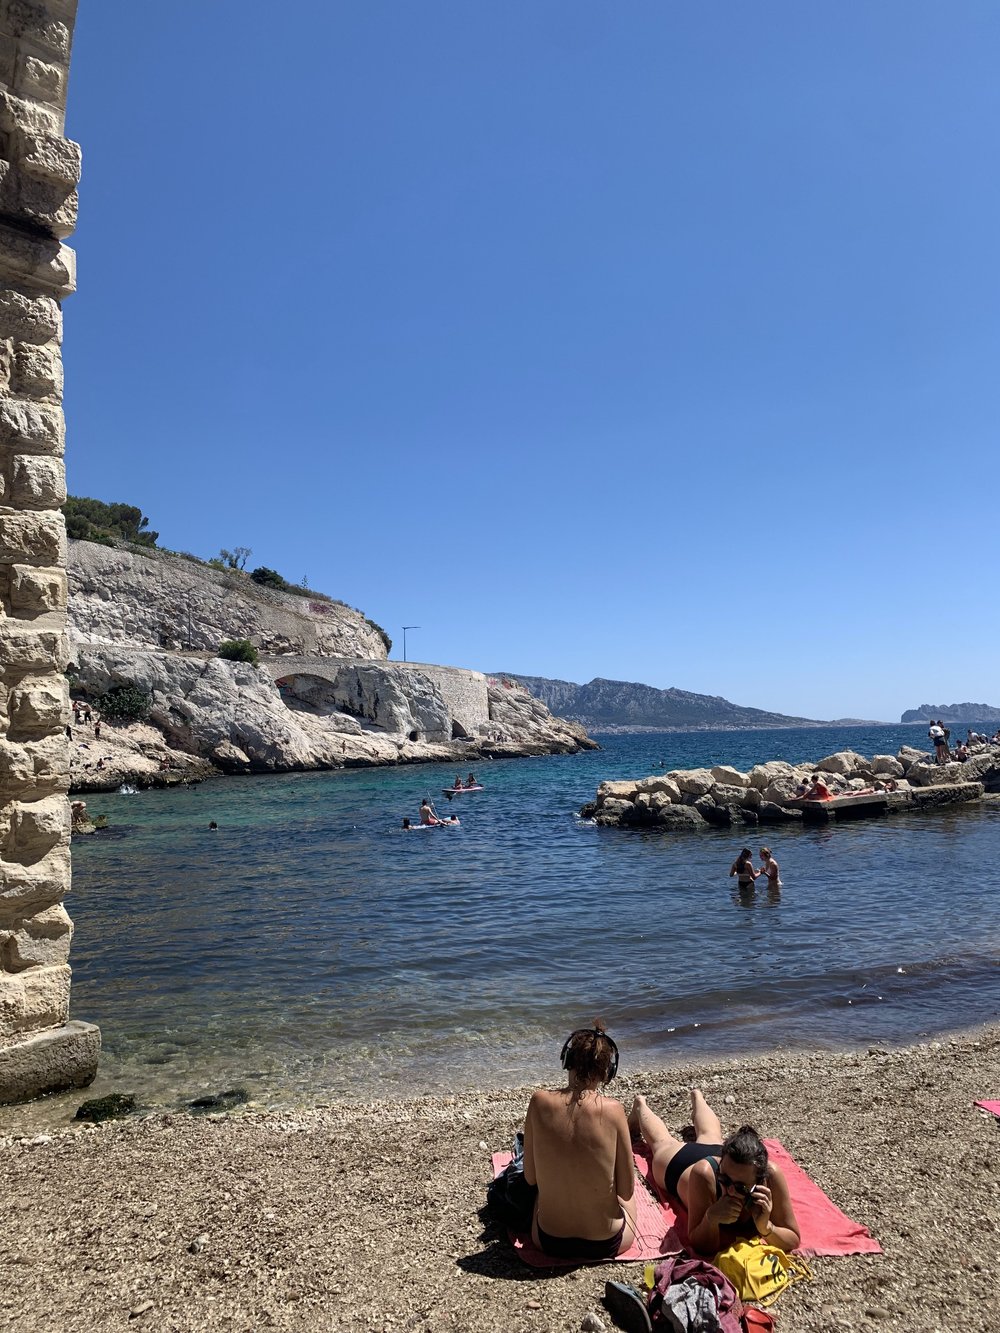 Beach in Marseille